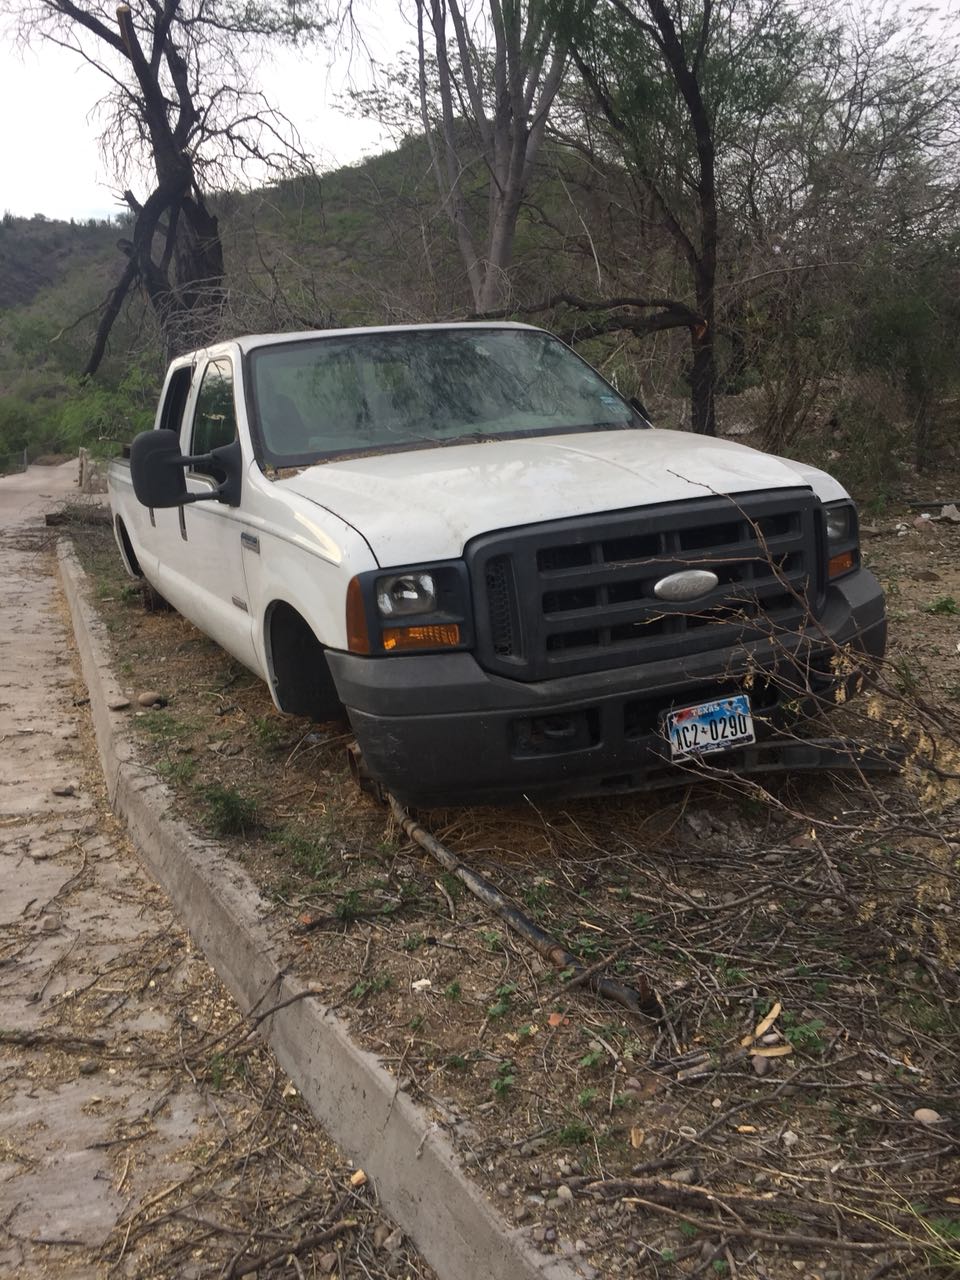 Aseguran 17 vehículos robados en límites entre Chihuahua y Sinaloa